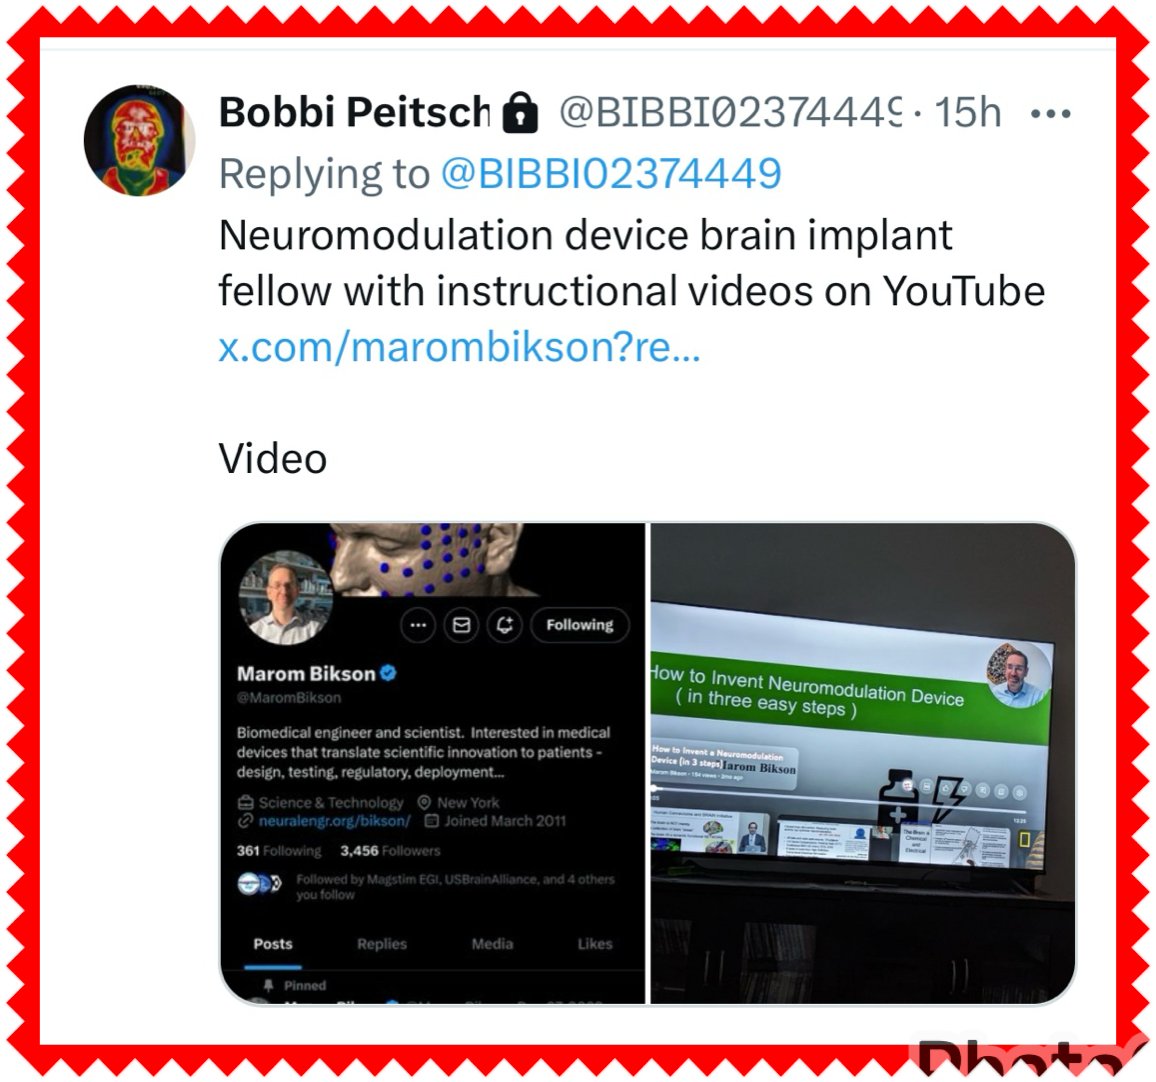 #Neuromodulation
#BrainImplants
#Biontech 
#Bioengineering
#Biomedical
#neuroscience 
#Neurorights